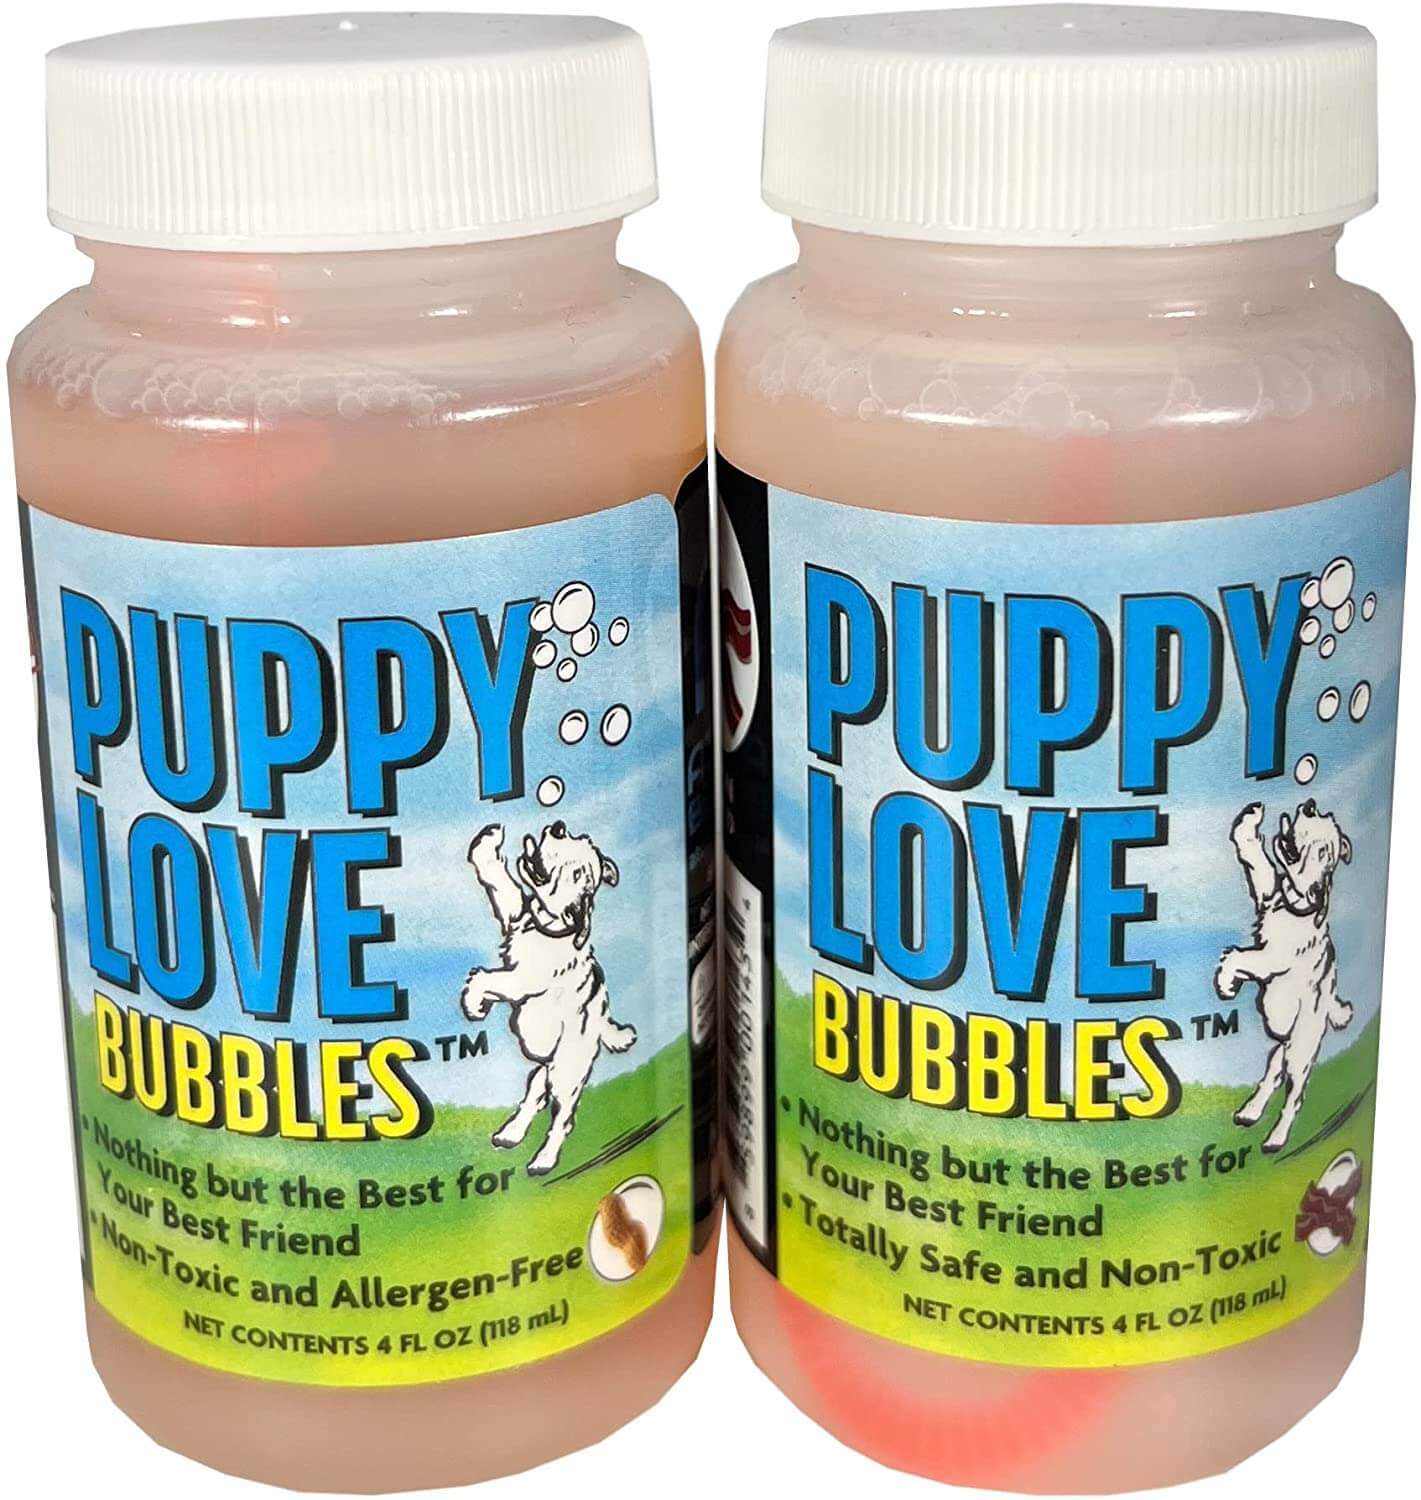 puppylovebubbles (1) (1).jpeg